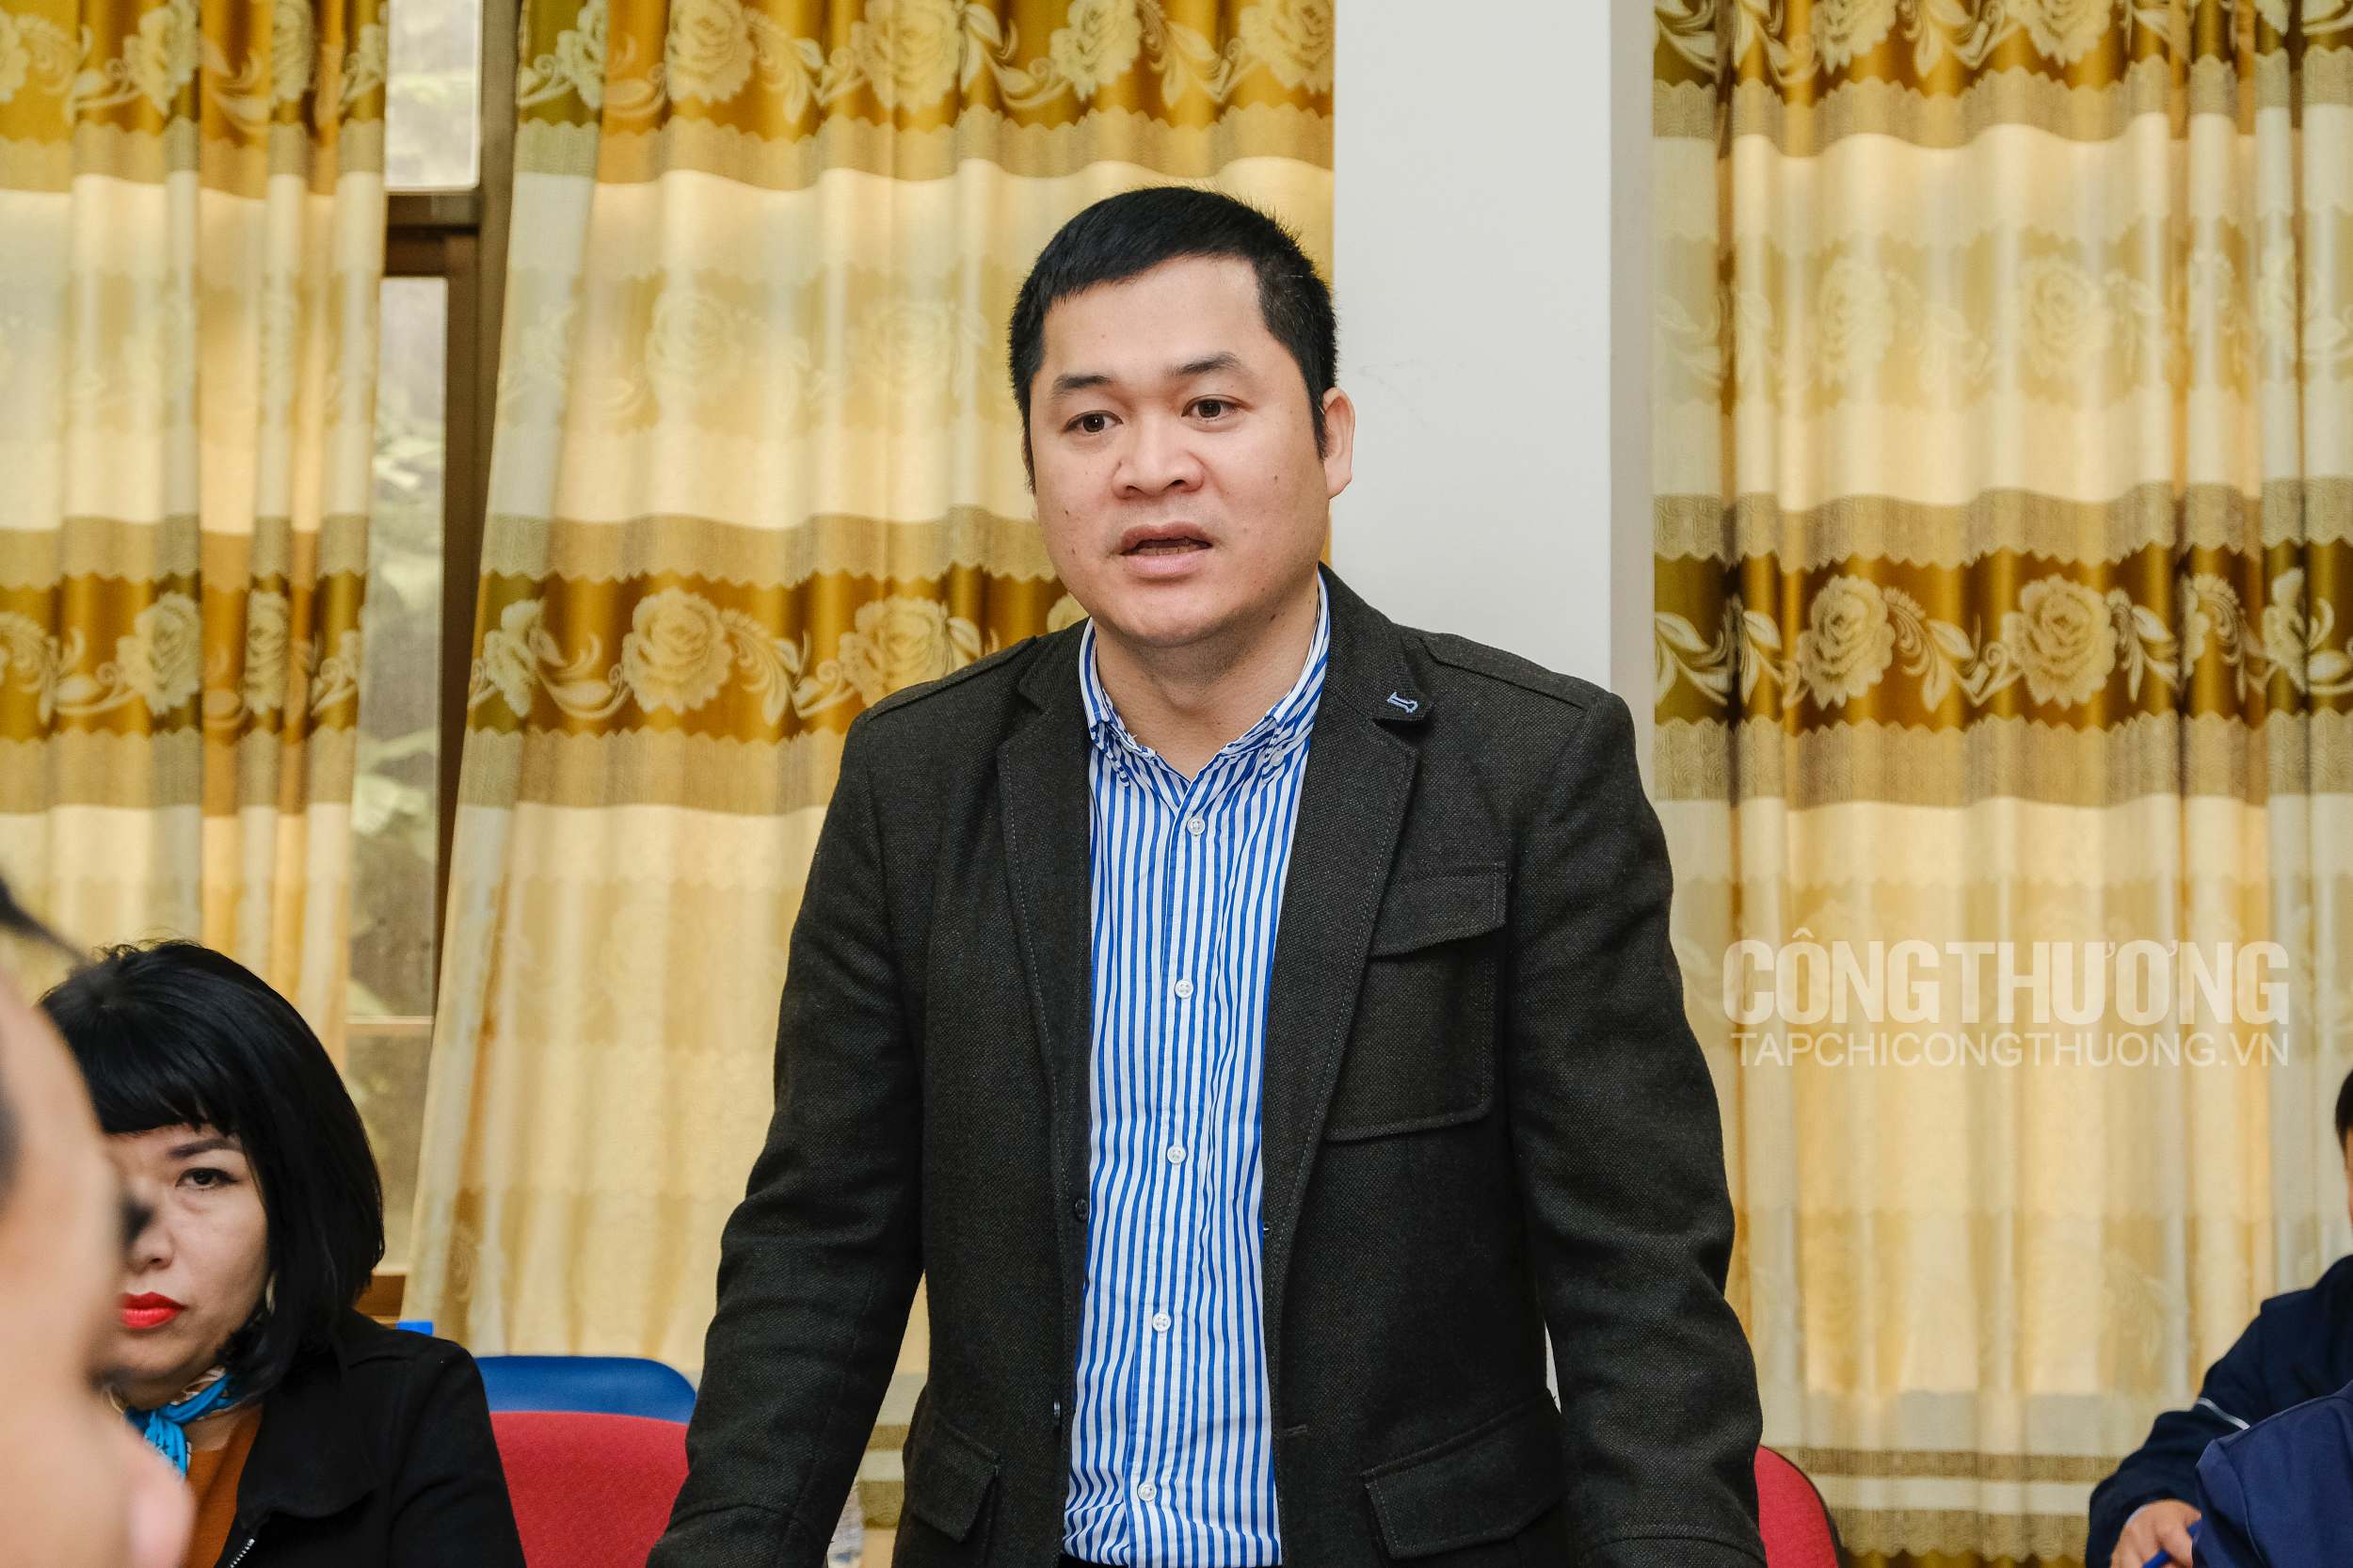 Ông Trần Quốc Toản - Phó Cục trưởng Cục Xuất nhập khẩu, Bộ Công Thương